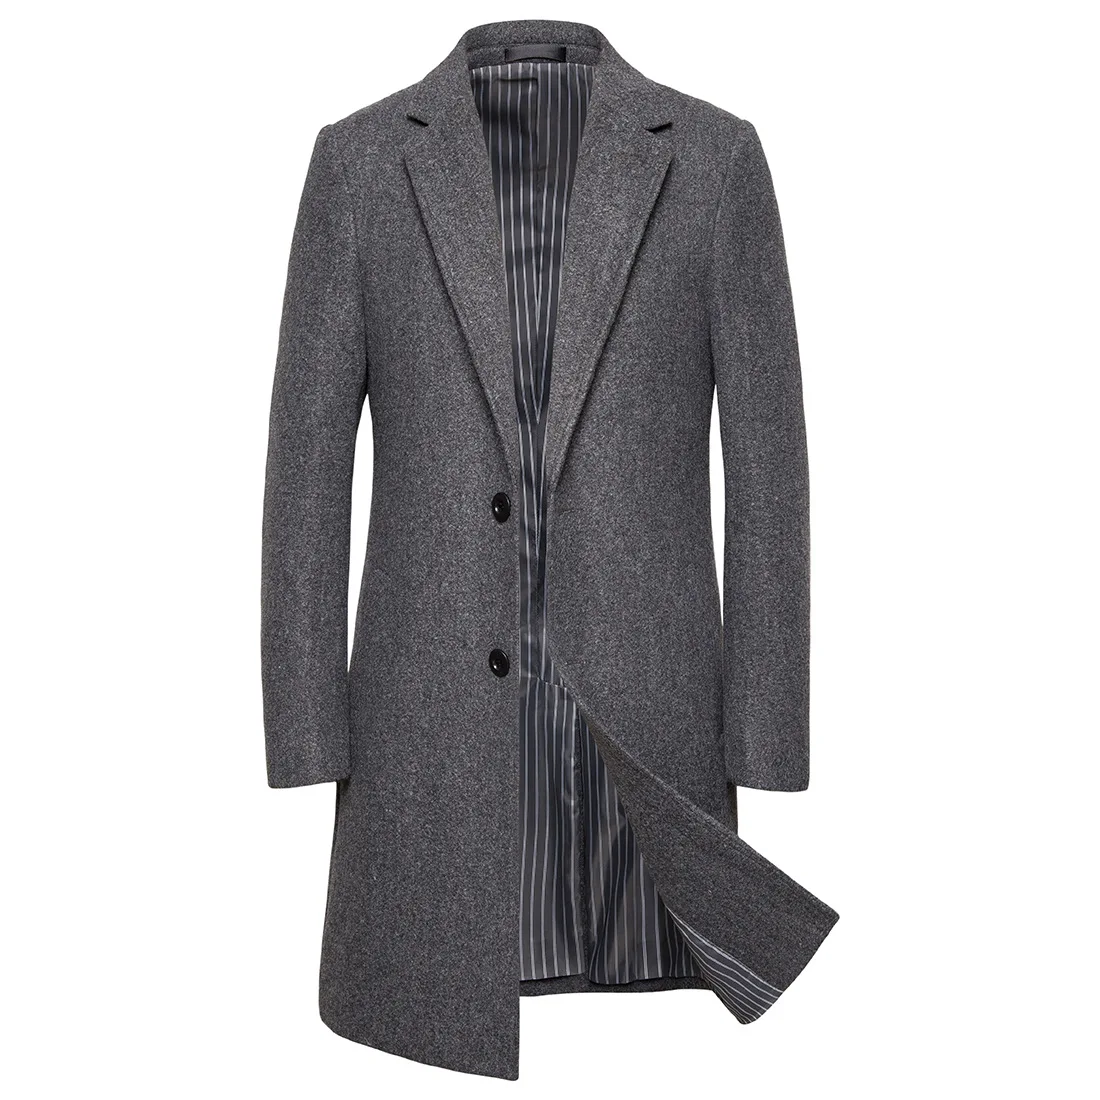 Осень и зима Новое мужское шерстяное пальто в длинном разрезе материала повседневная мужская куртка-ветровка пальто для мужчин